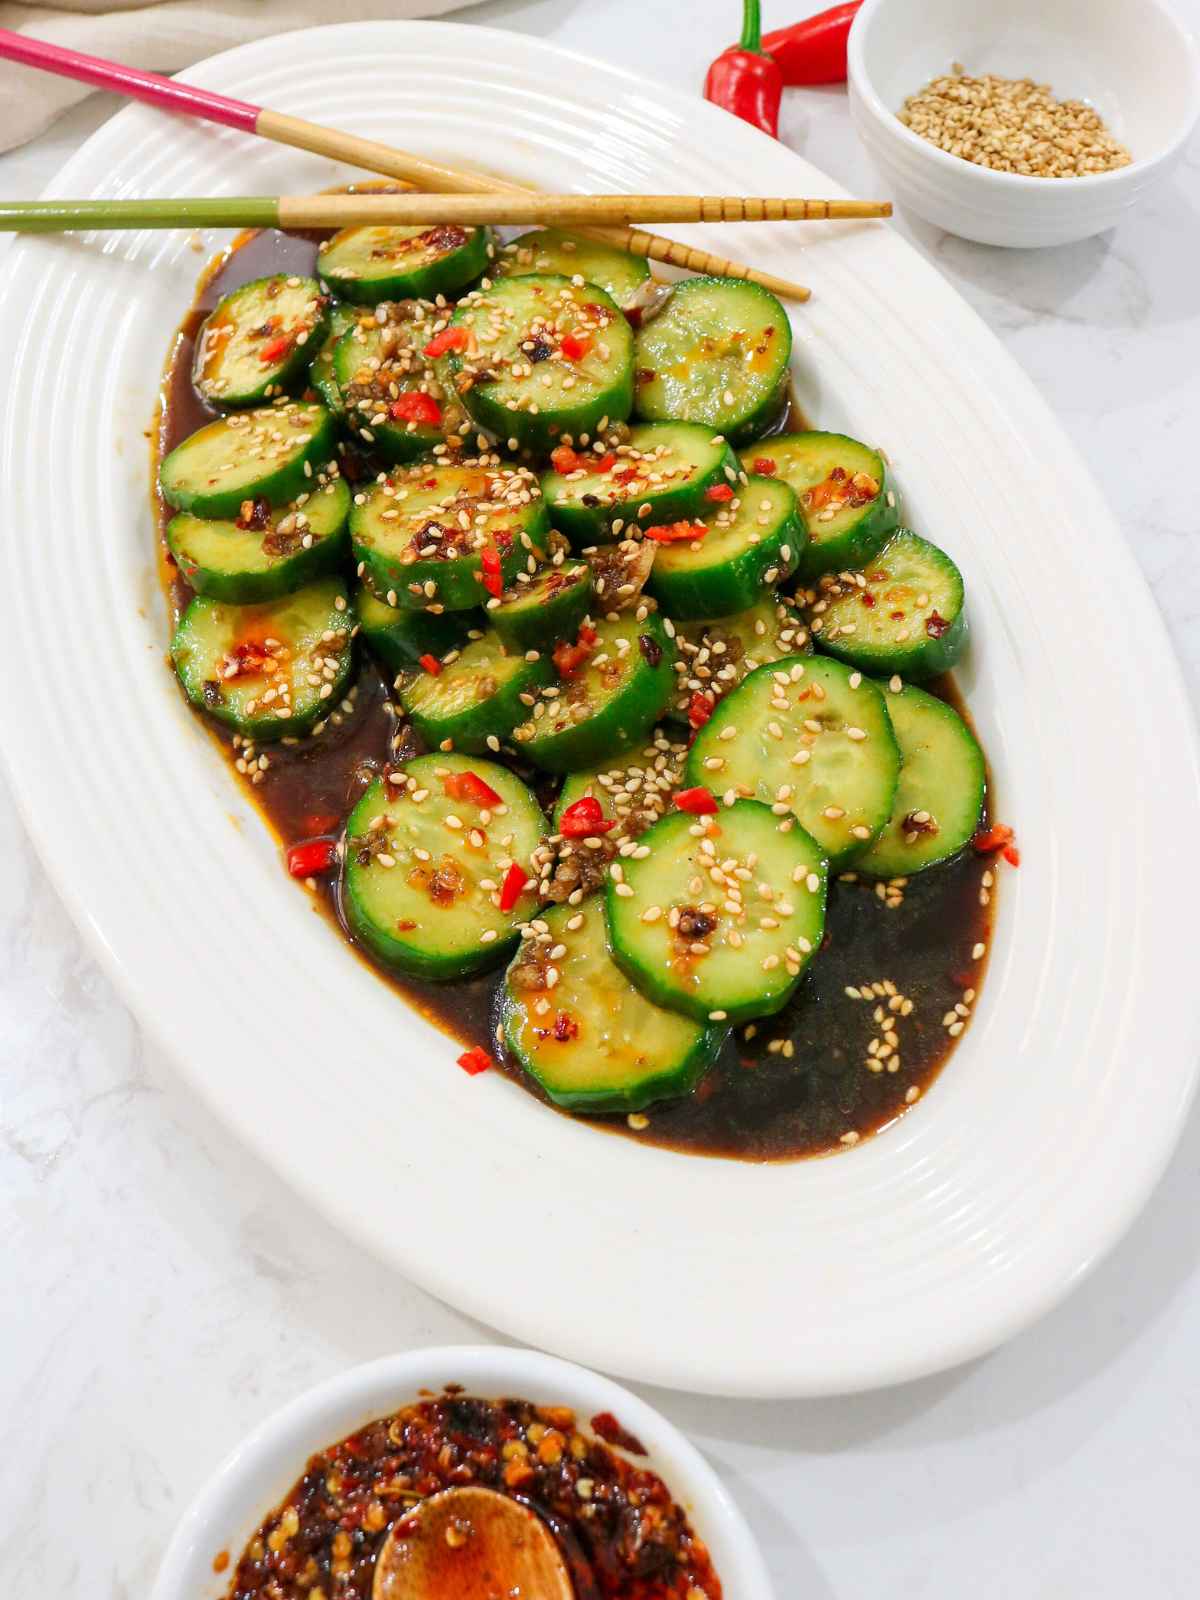 Din tai fung cucumber served in a white dish.